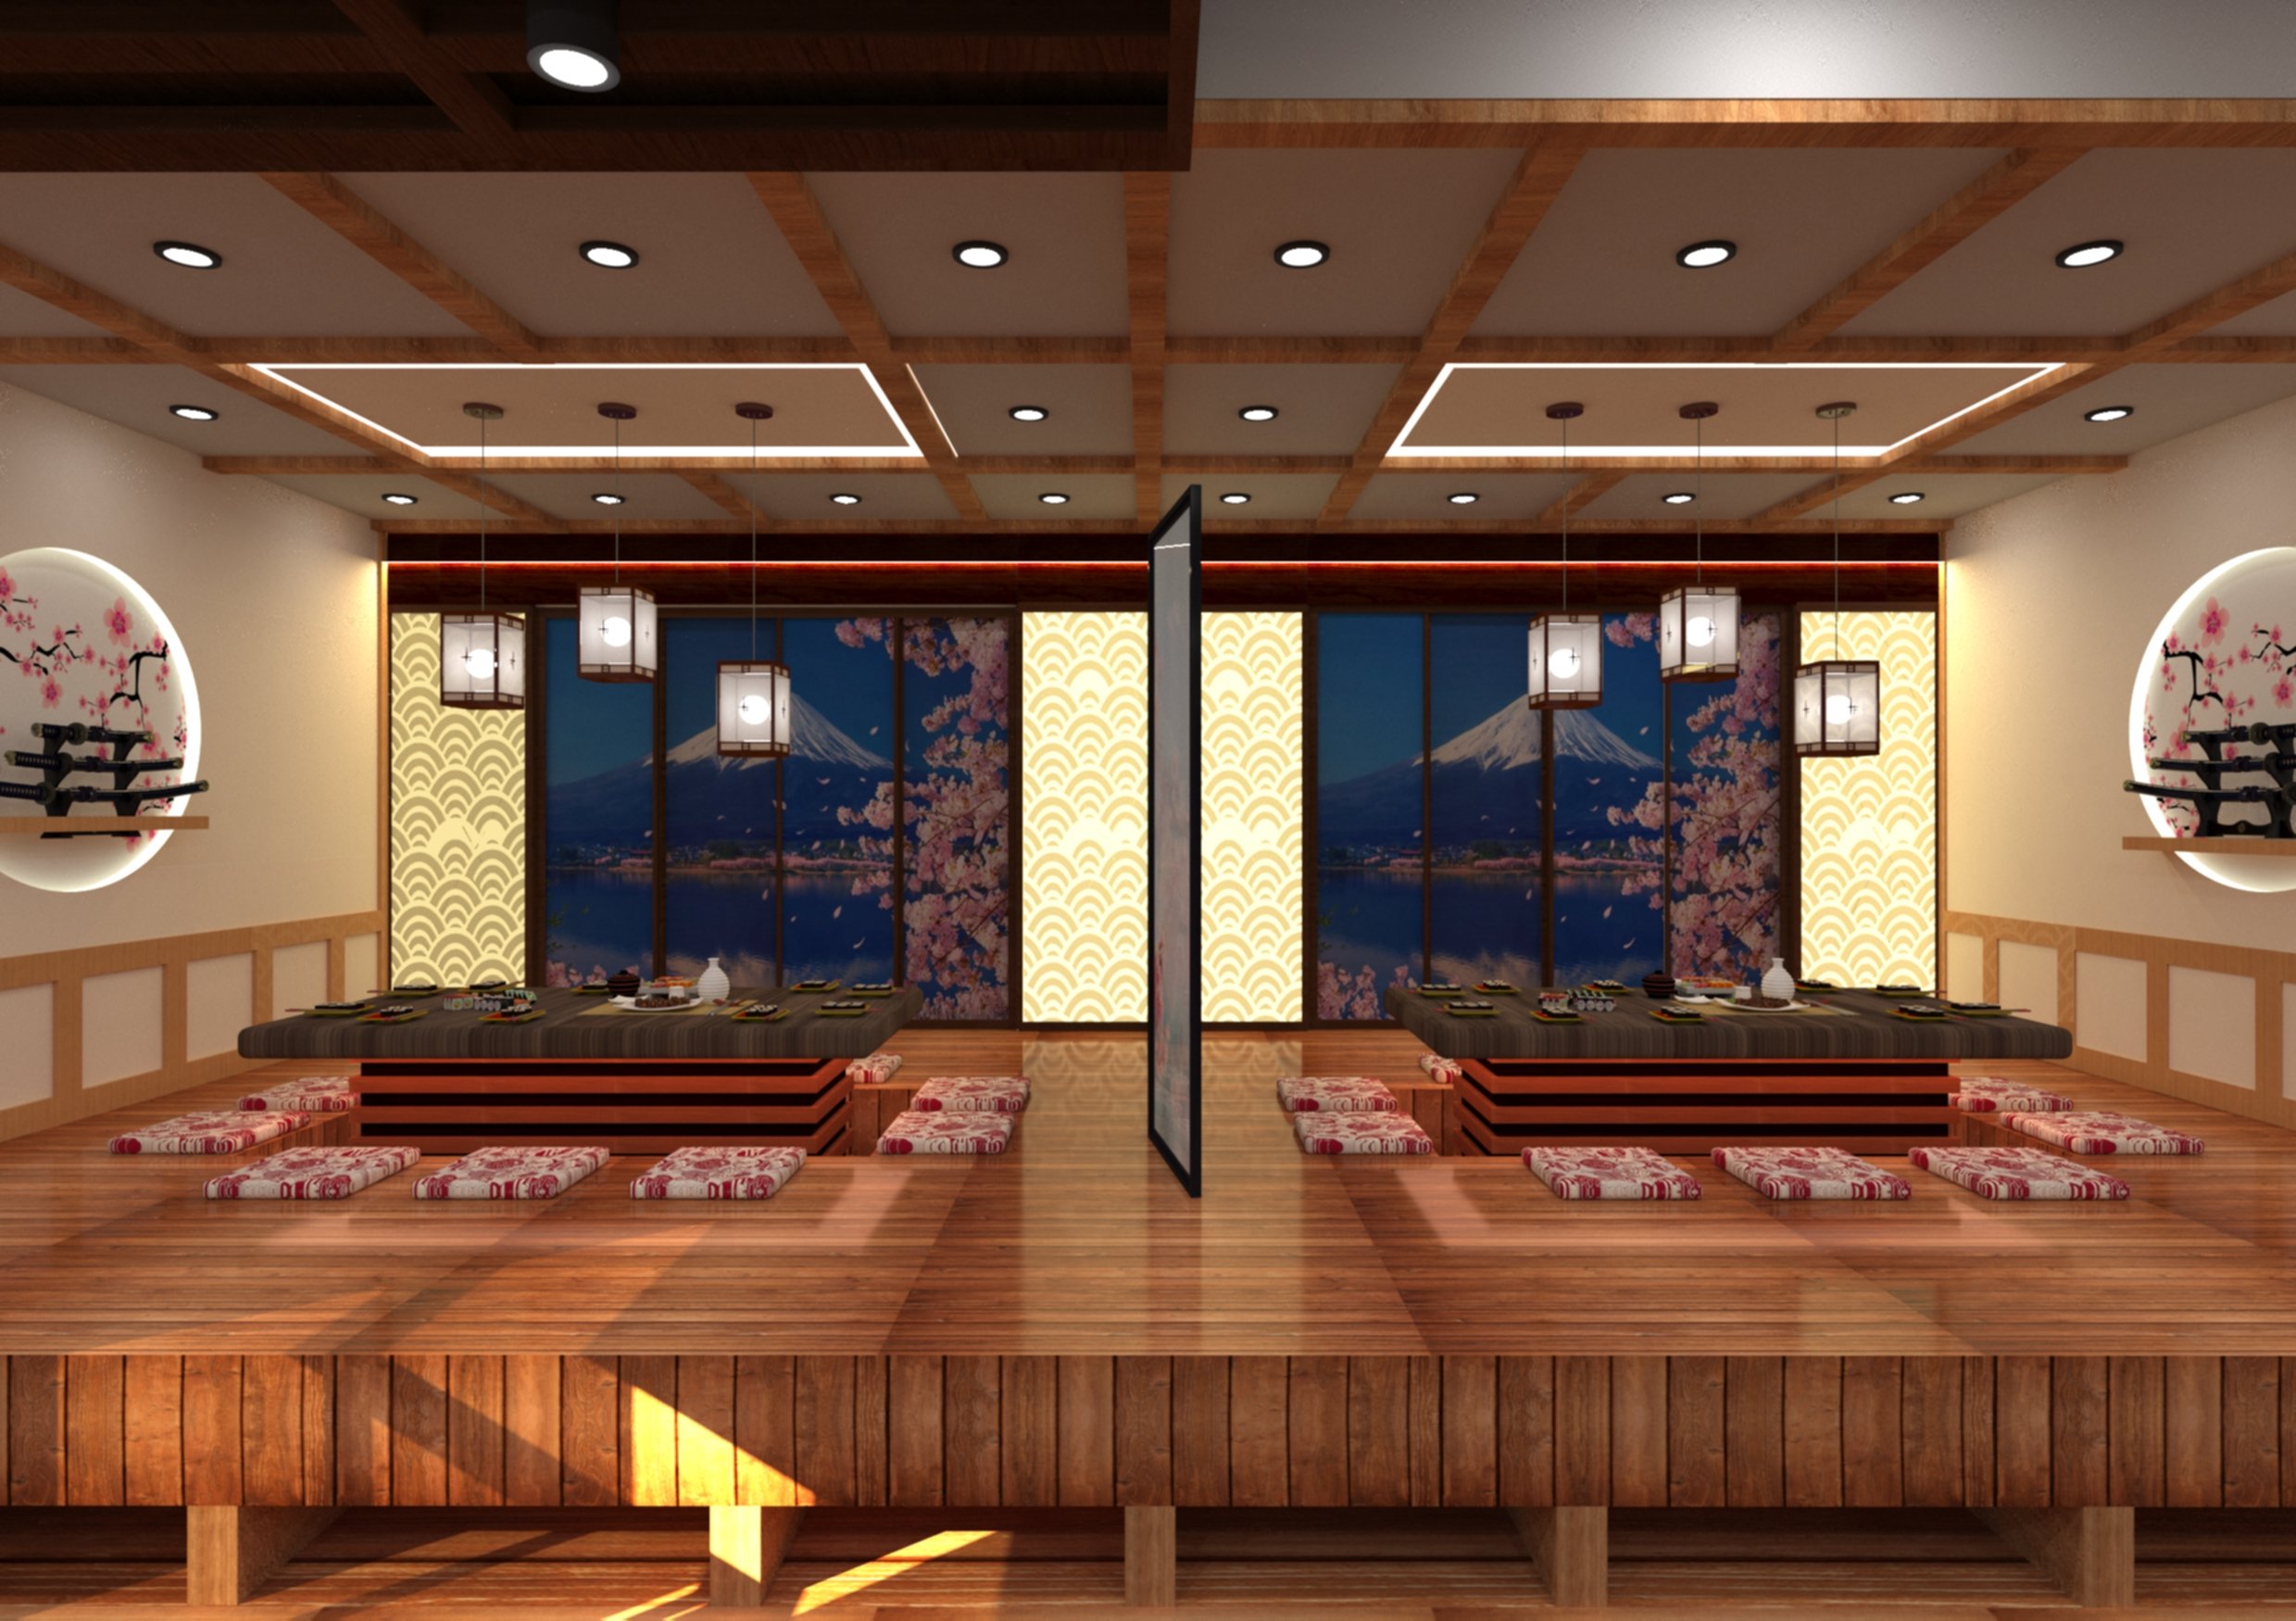 Thiết kế nội thất Nhà Hàng tại Hồ Chí Minh Đồ án thiết kế nhà hàng Nhật Bản 1633334936 0